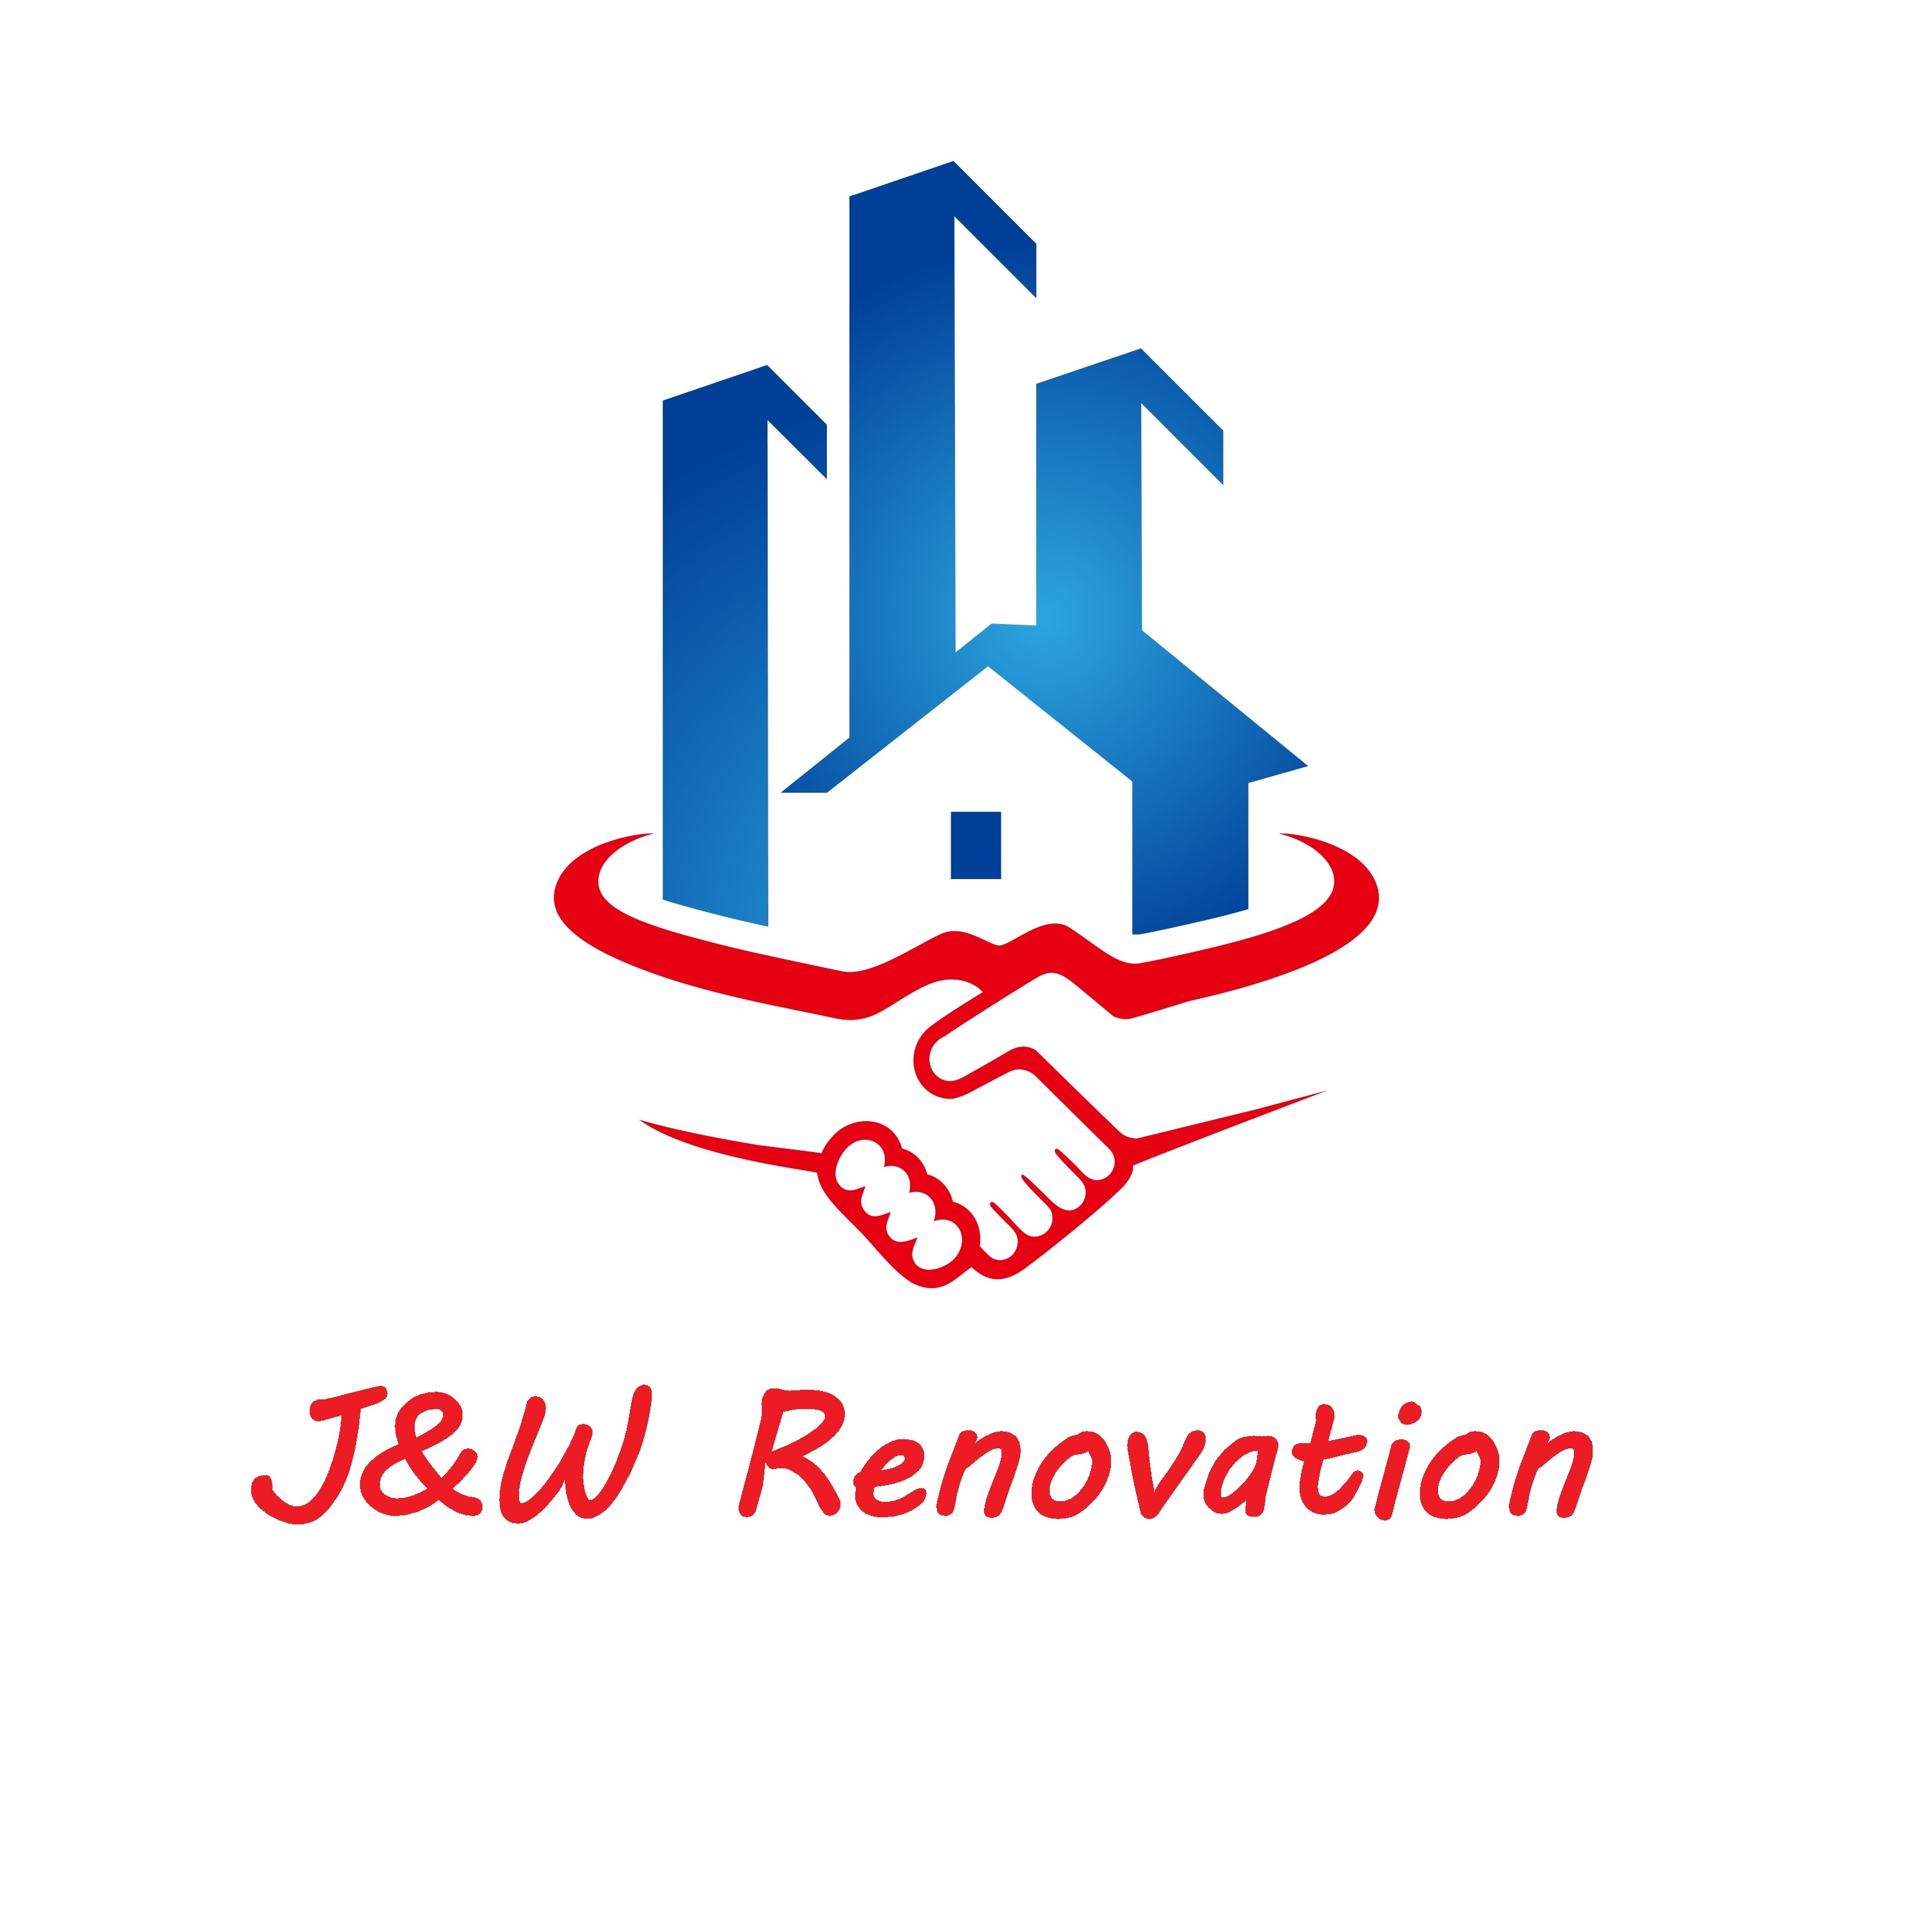 J&W Renovation's logo